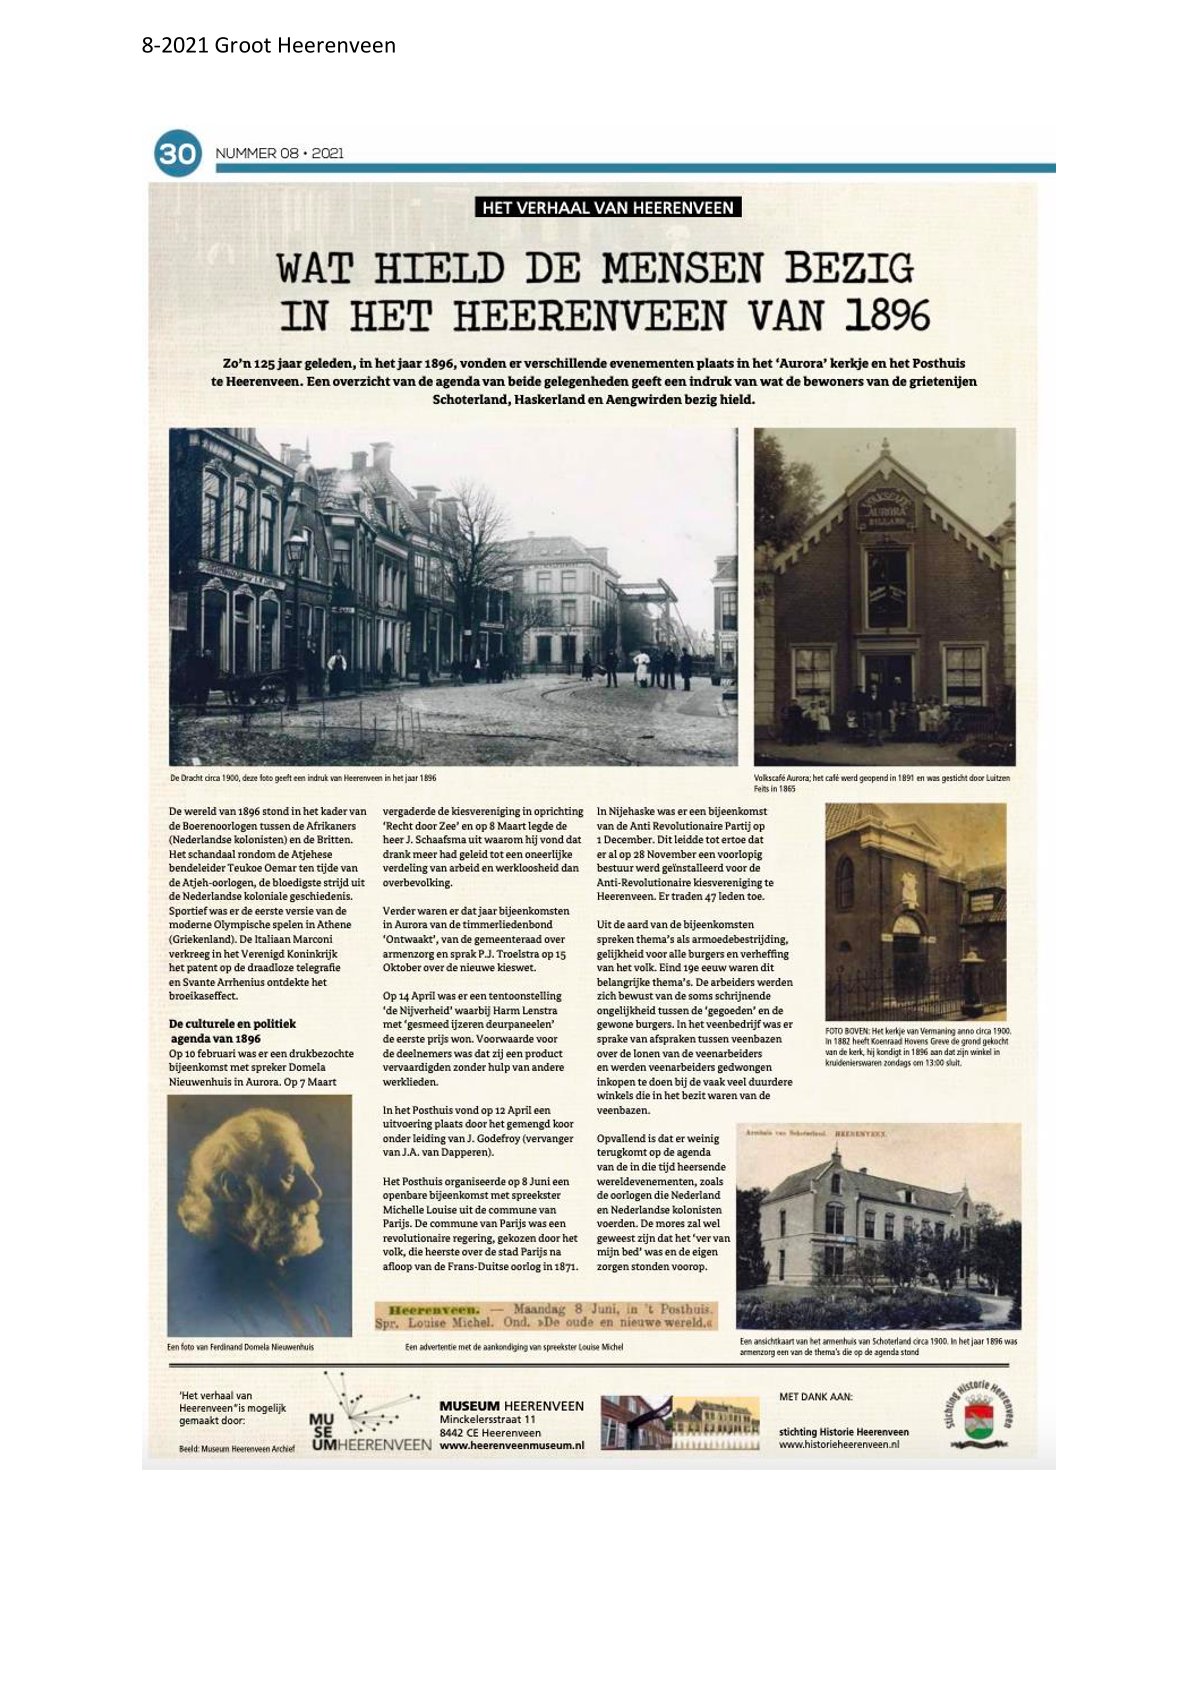 Wat hield de mensen bezig in het Heerenveen van 1896